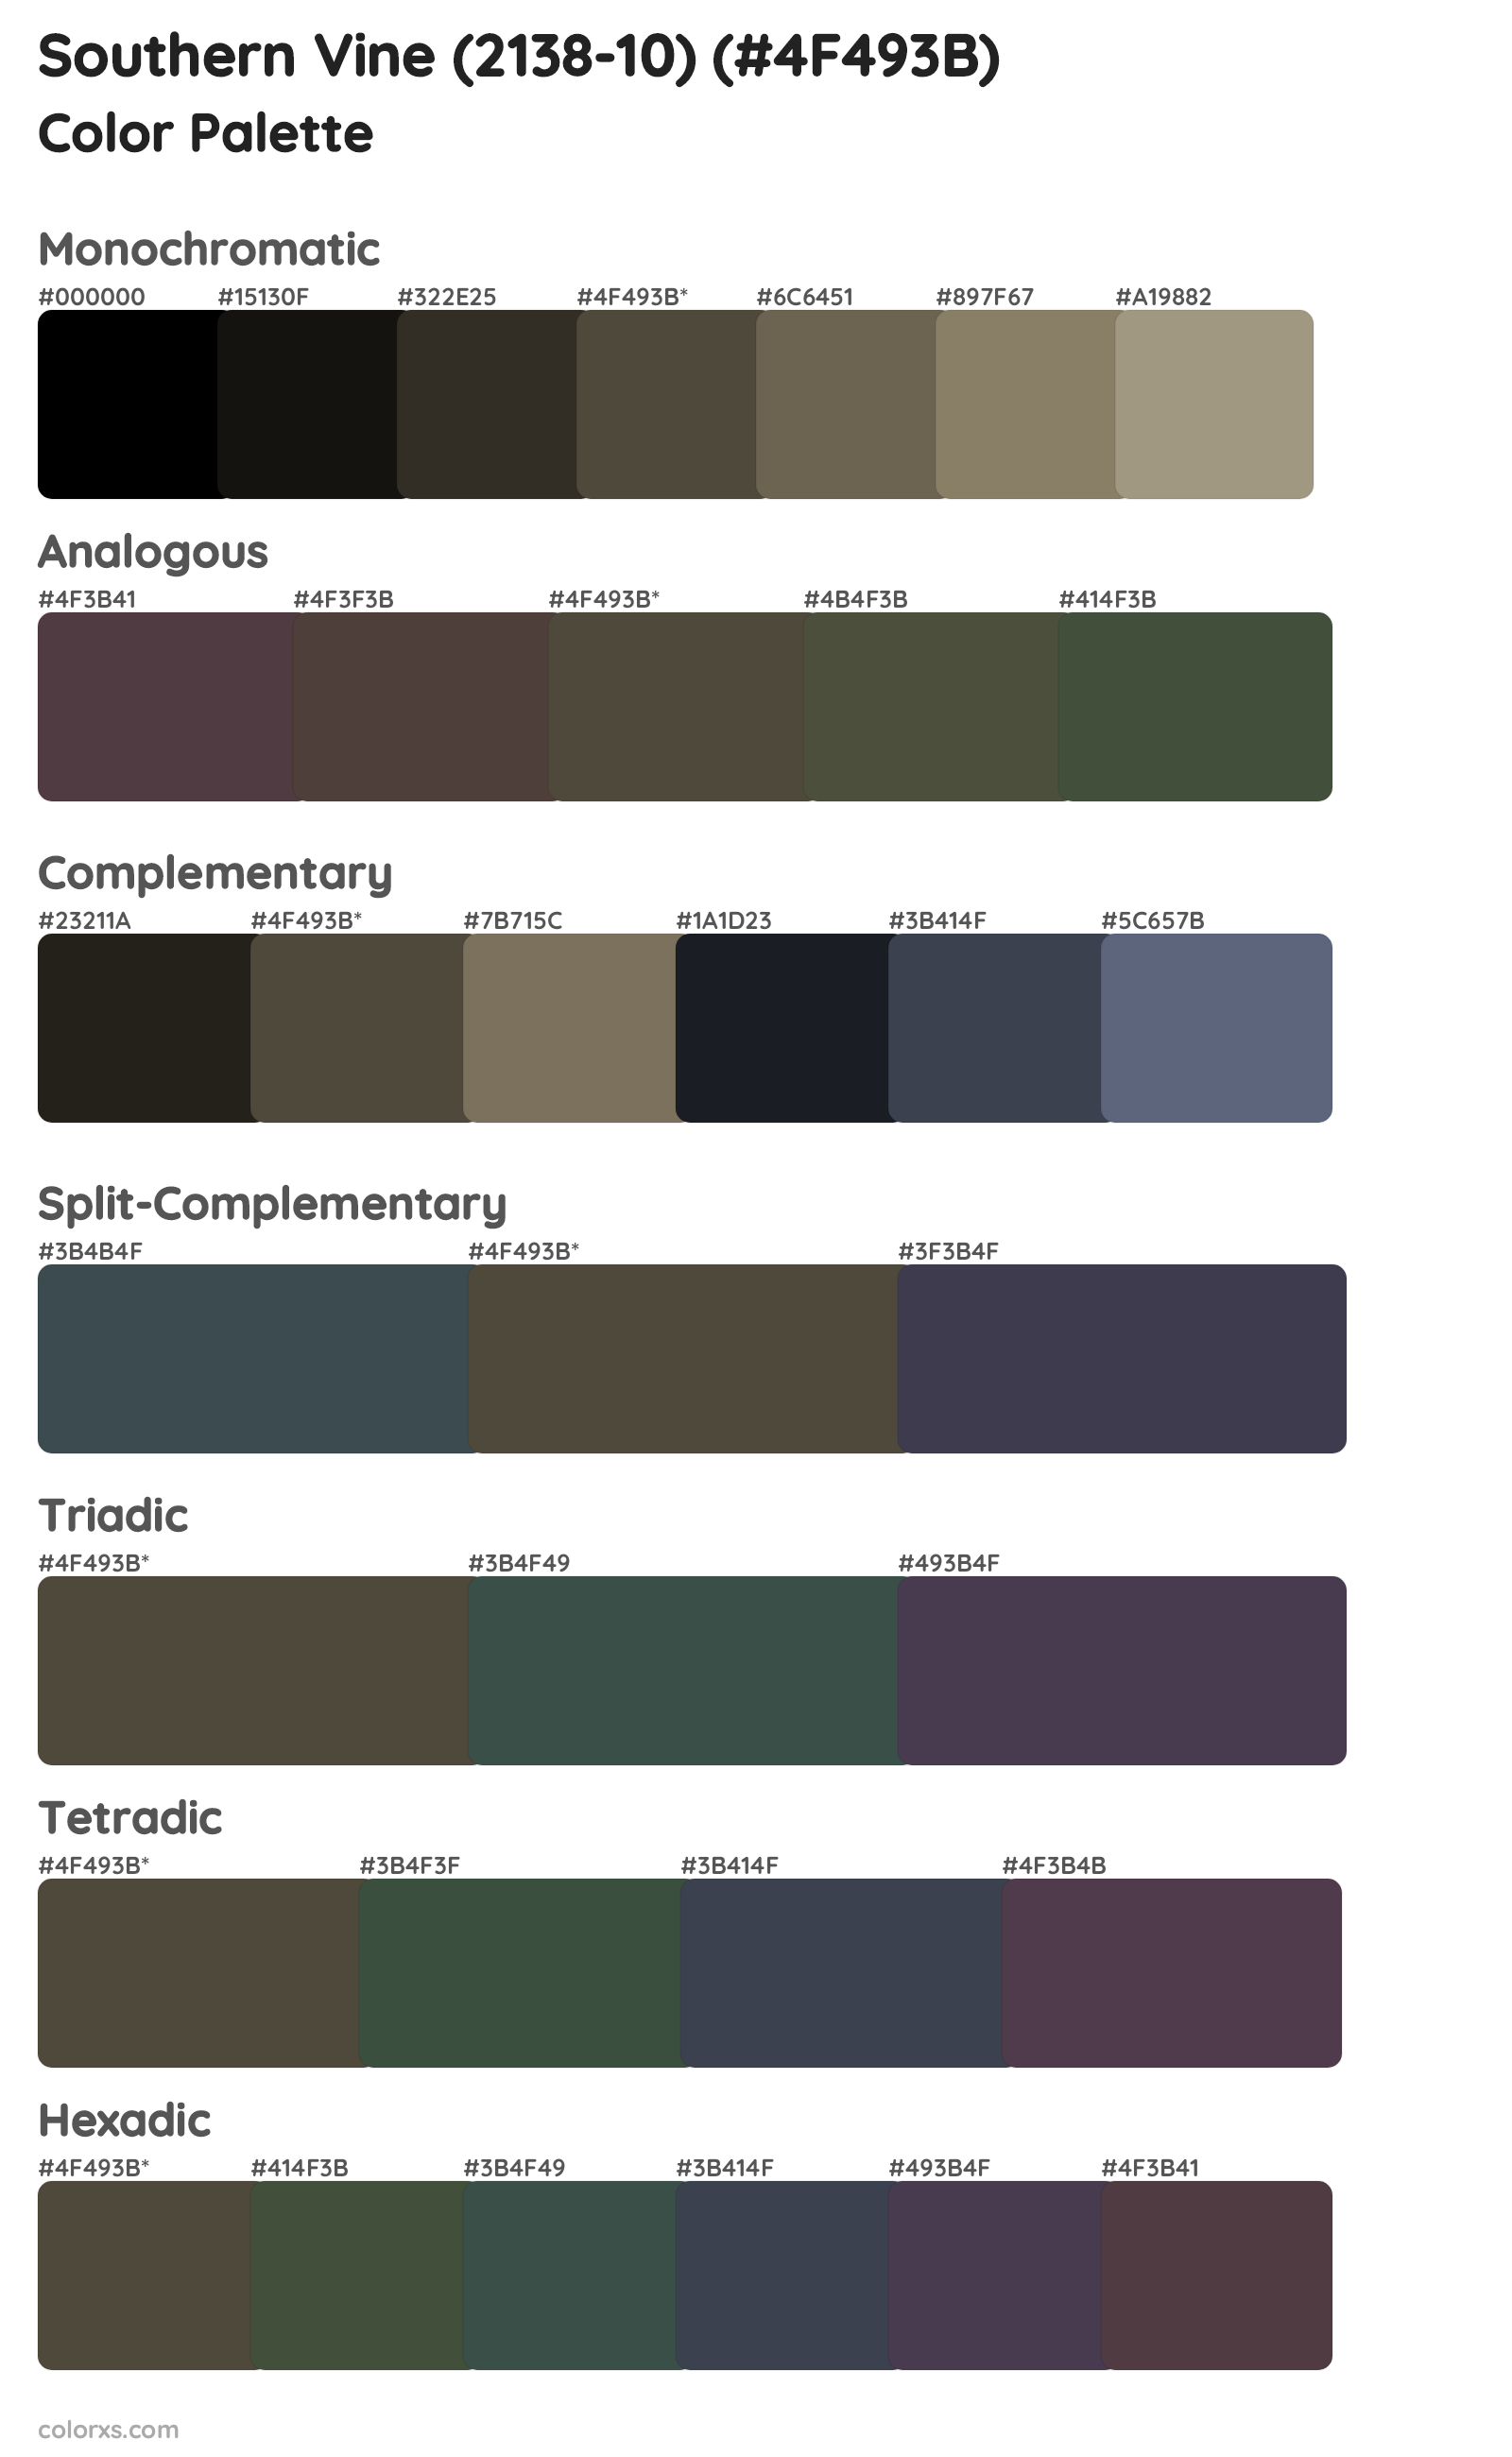 Southern Vine (2138-10) Color Scheme Palettes